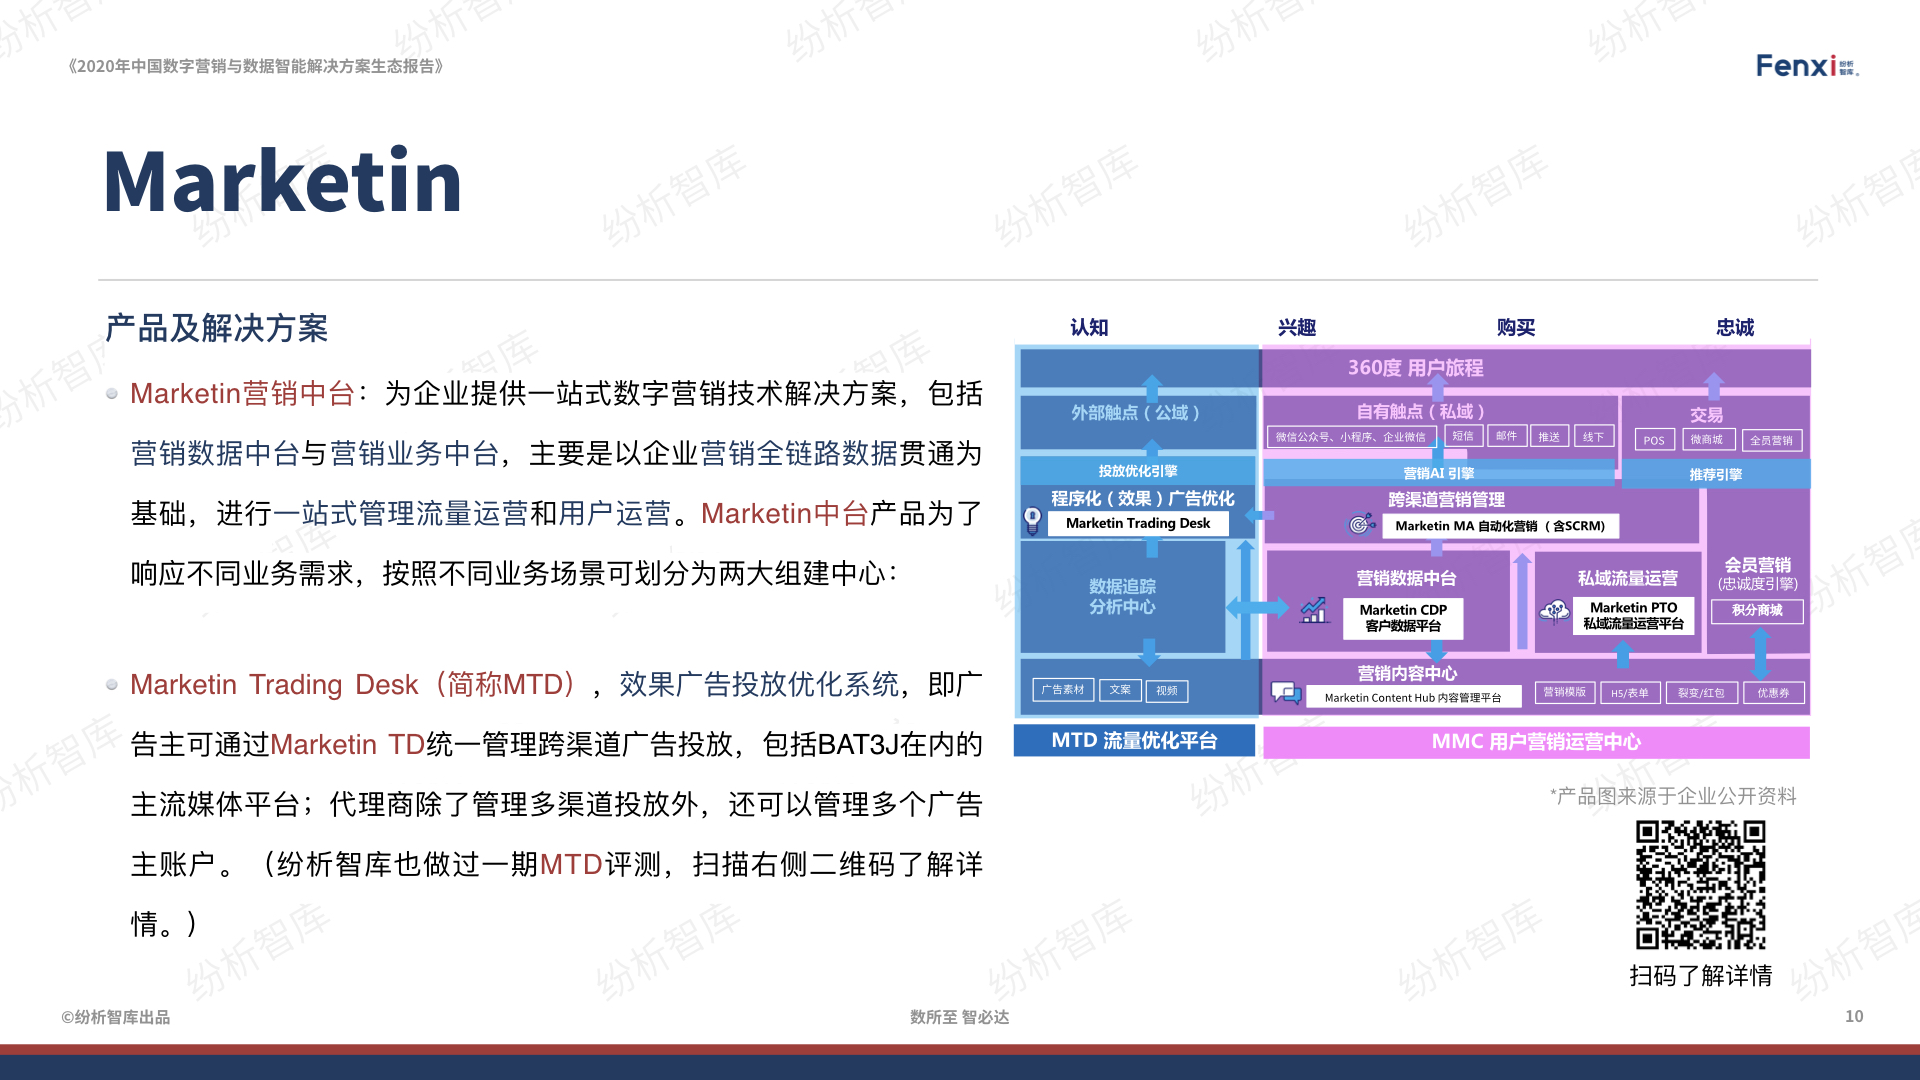 【V8】《2020年中国数字营销与数据智能解决方案生态图报告》0106.010.jpeg